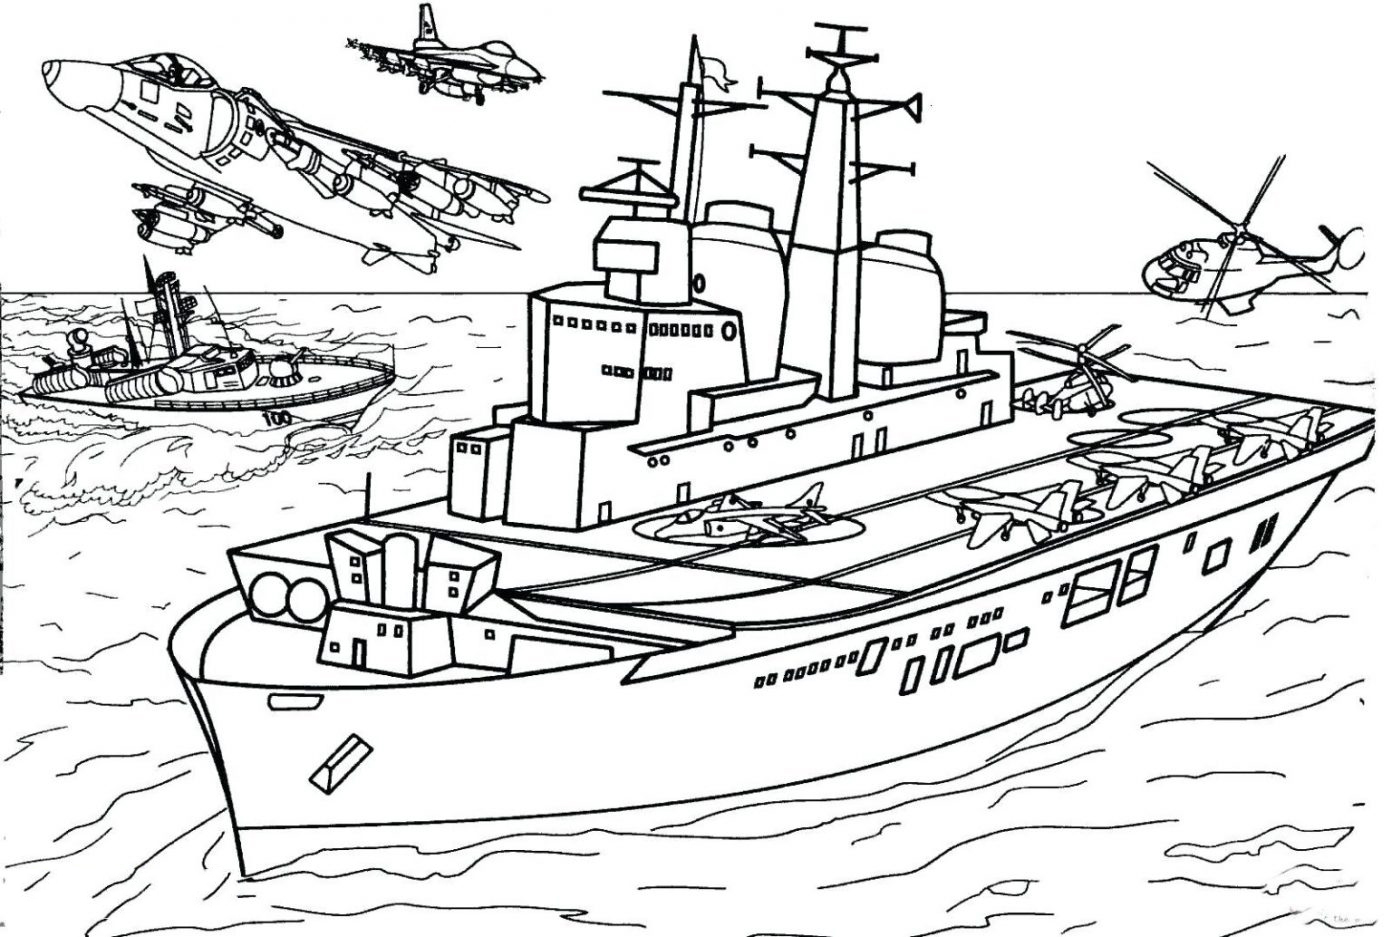 Xem hơn 100 ảnh về hình vẽ tàu chiến  daotaonec